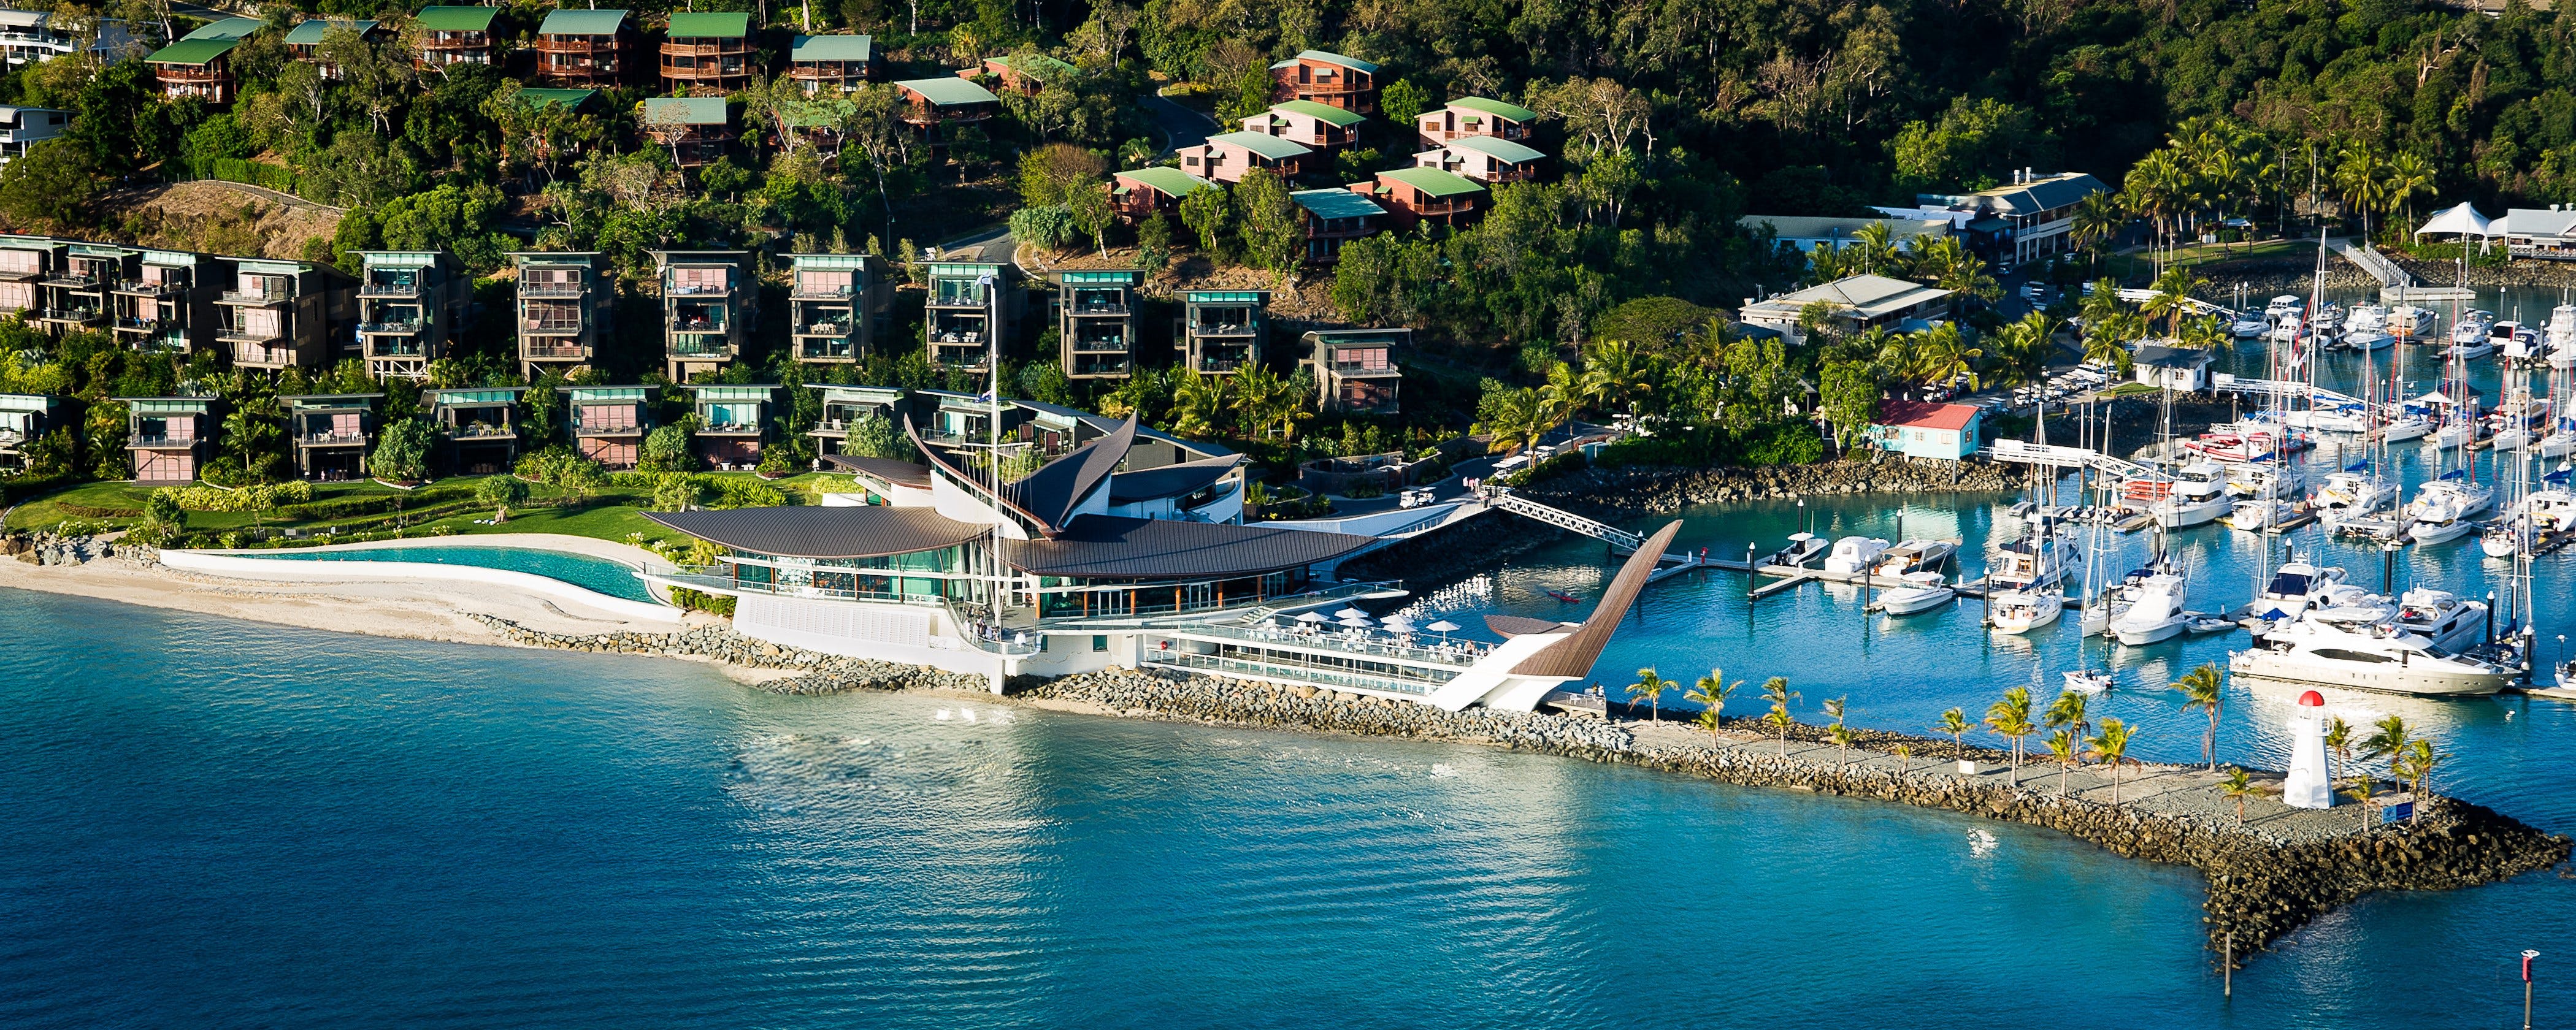 Hamilton Island Yacht Club - Accommodation in Brisbane